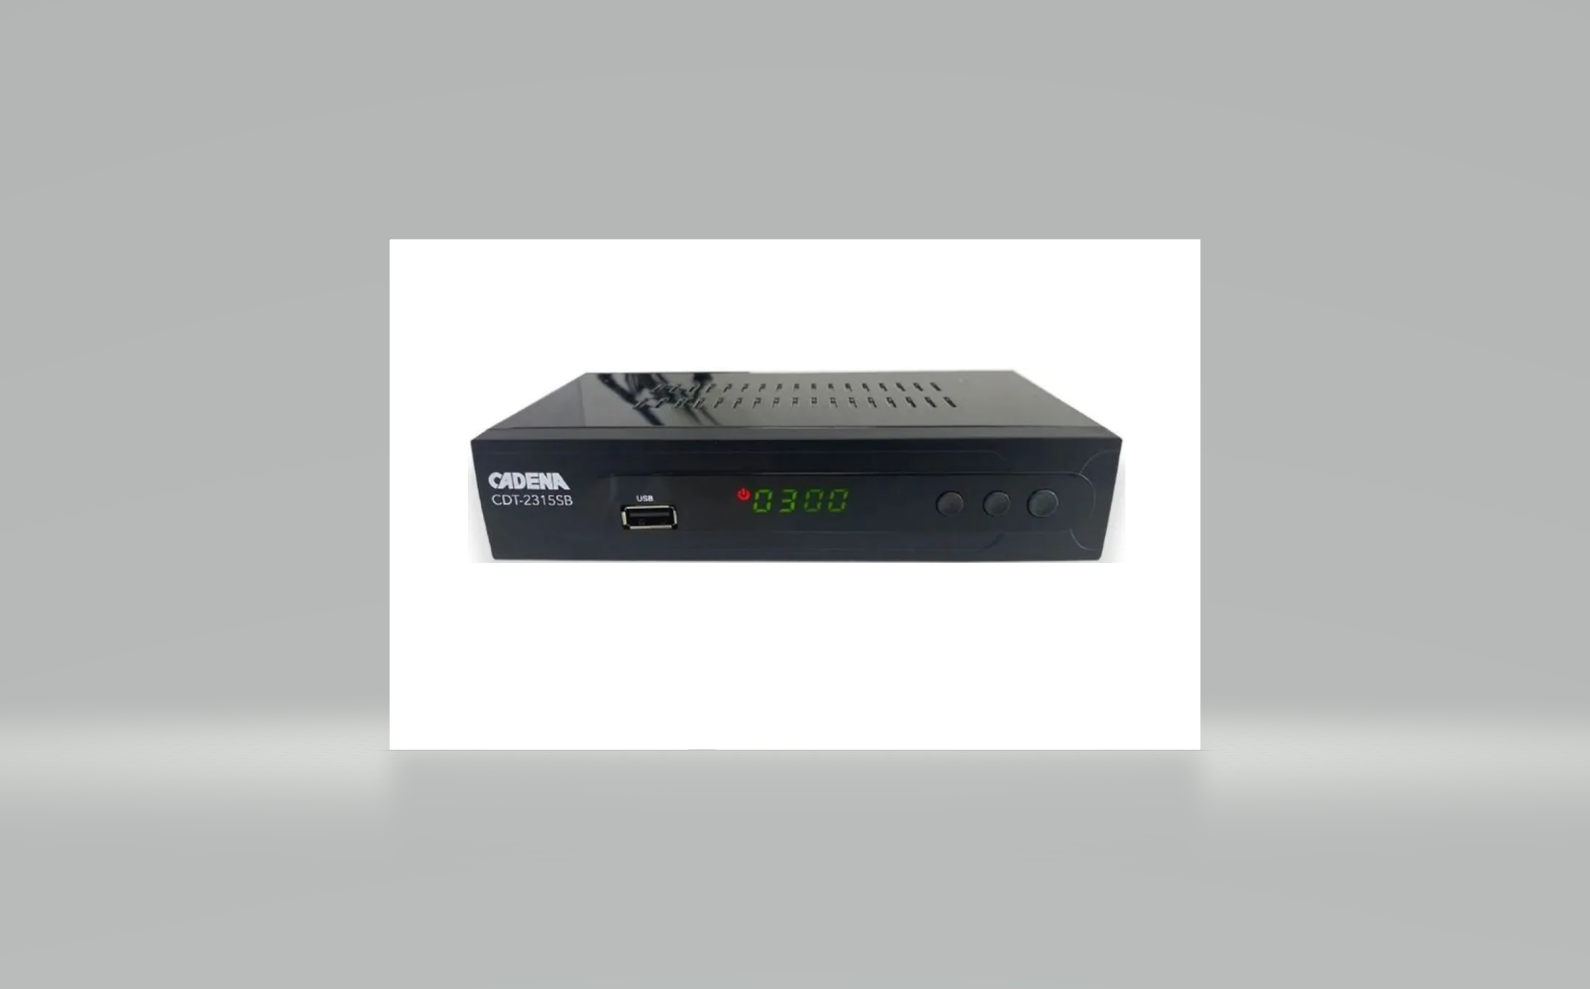 Цифровой ресивер DVB-T2 CADENA CDT-2315SB черный